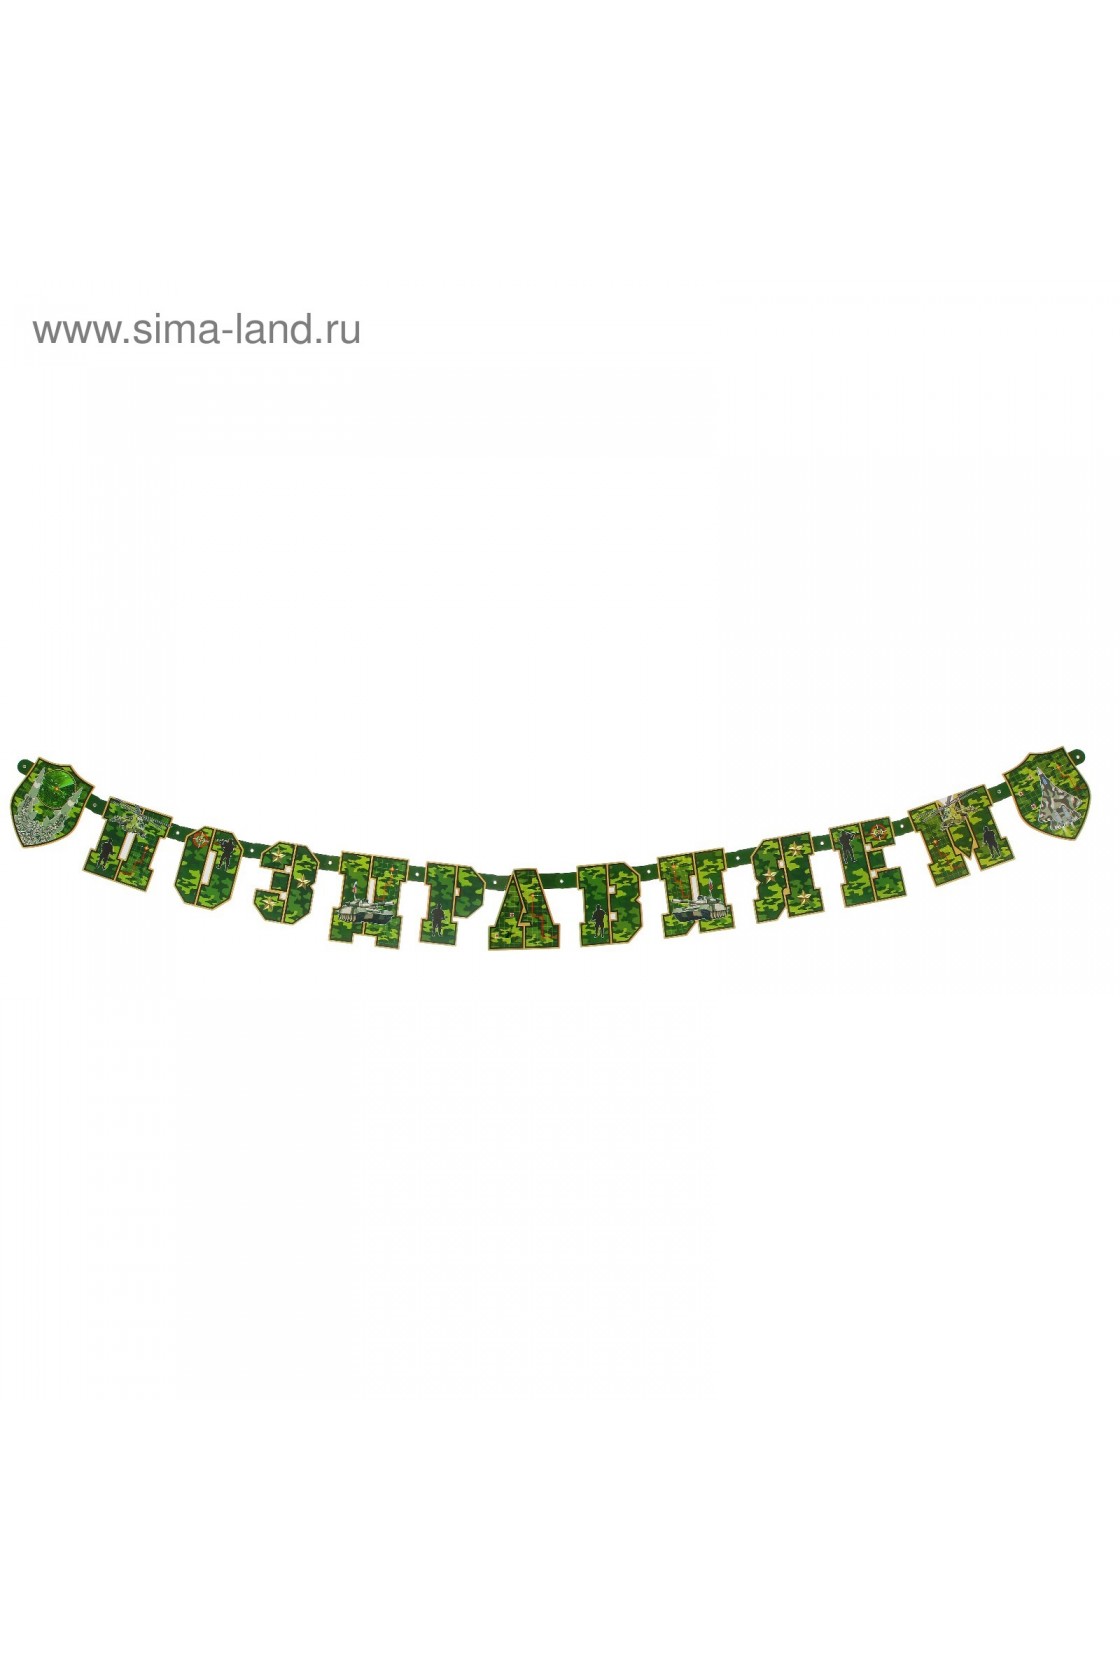 Купить Гирлянда буквы Поздравляем Камуфляж в Новосибирске с доставкой